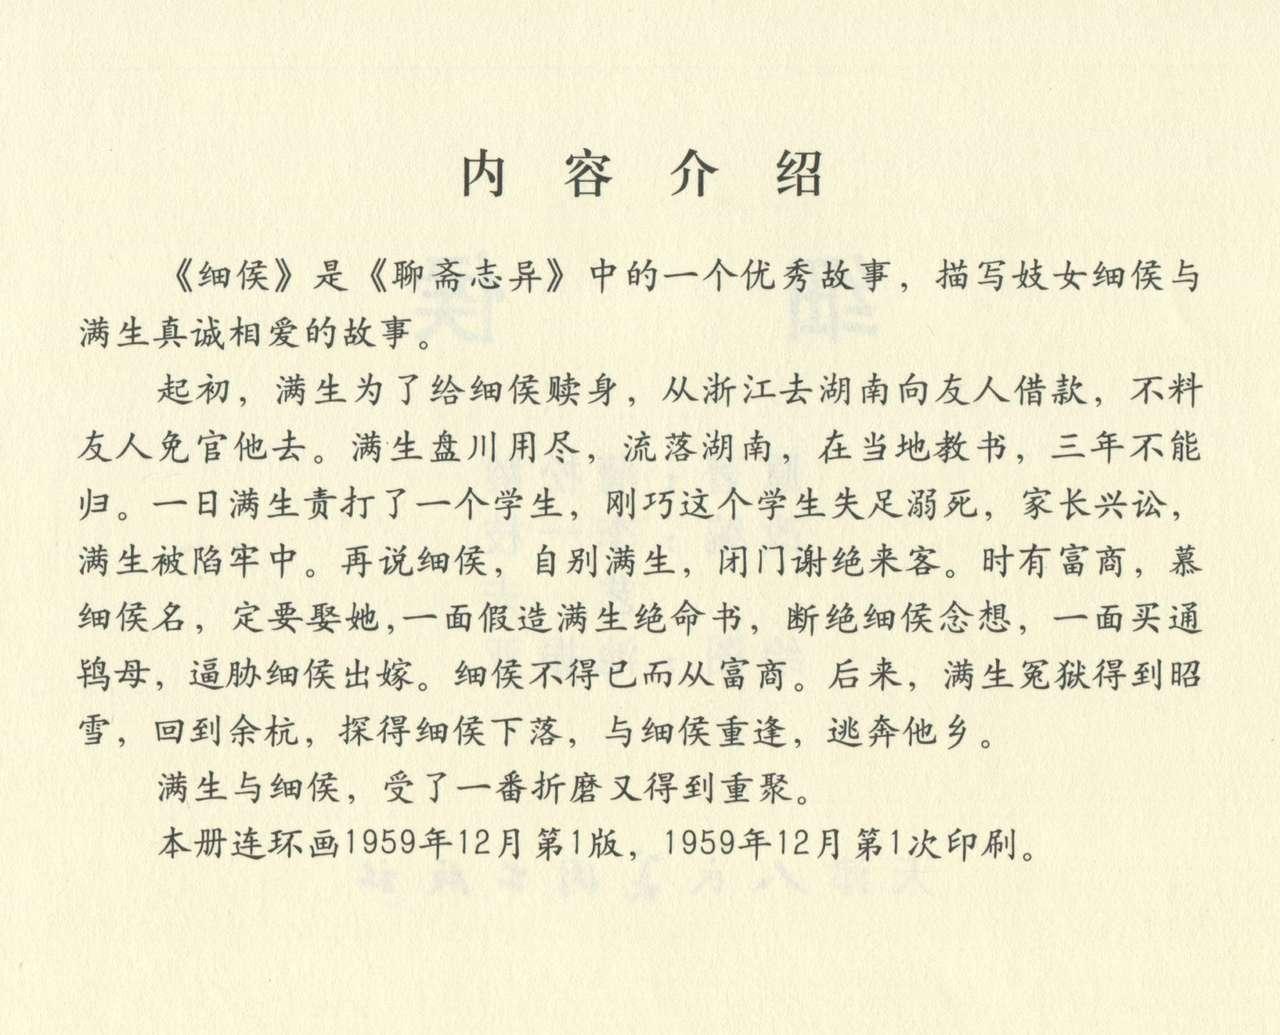 聊斋志异 张玮等绘 天津人民美术出版社 卷二十一 ~ 三十 411